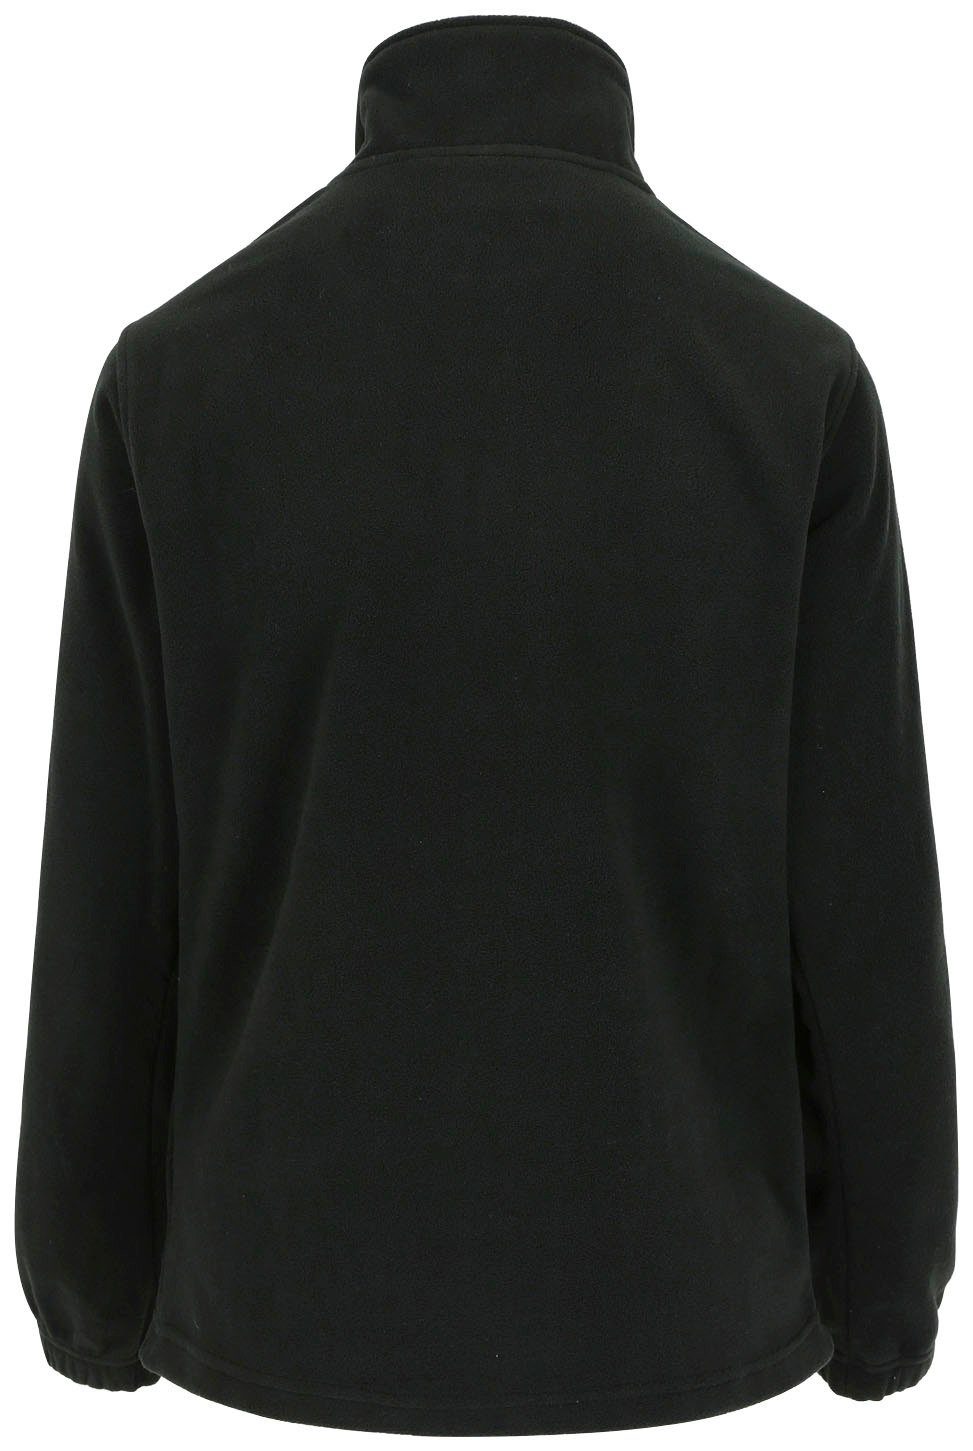 Stehkragenpullover schwarz und Herock Reißverschluss Damenfleecepullover Fleece-Sweater Bündchen elastichem Aurora-Demen kurzem mit